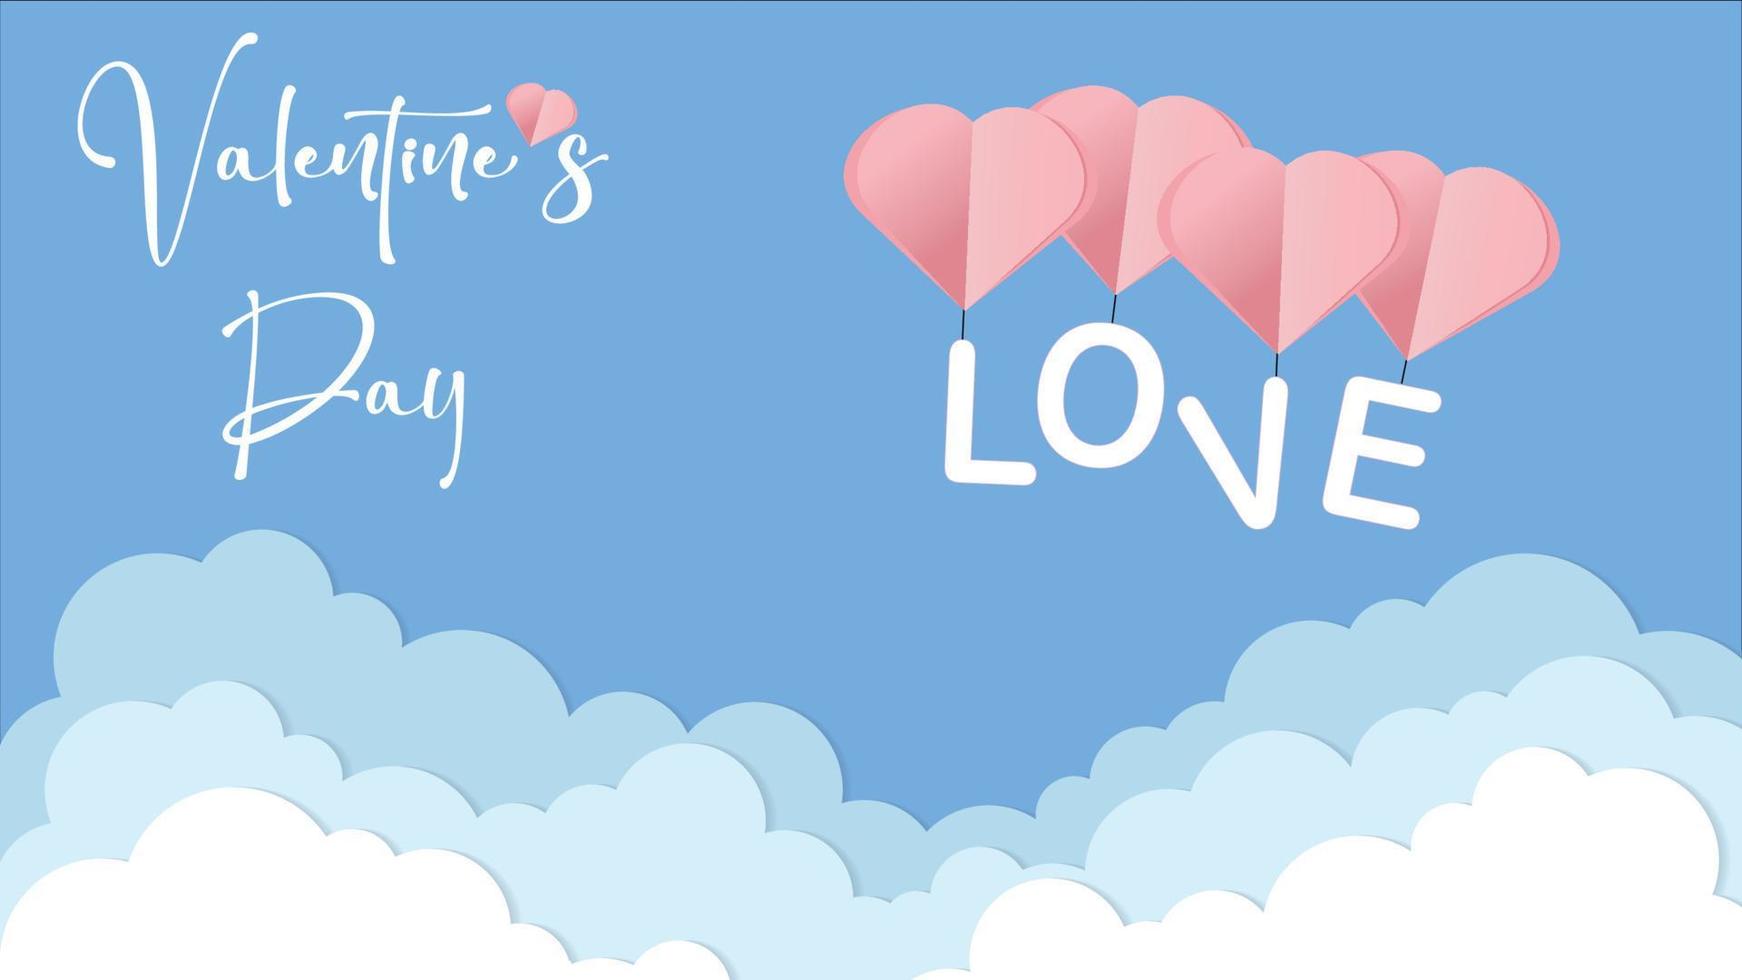 vettore amore cartolina per San Valentino giorno con con il iscrizione amore, sospeso su il cuore, carta nuvole e blu sfondo